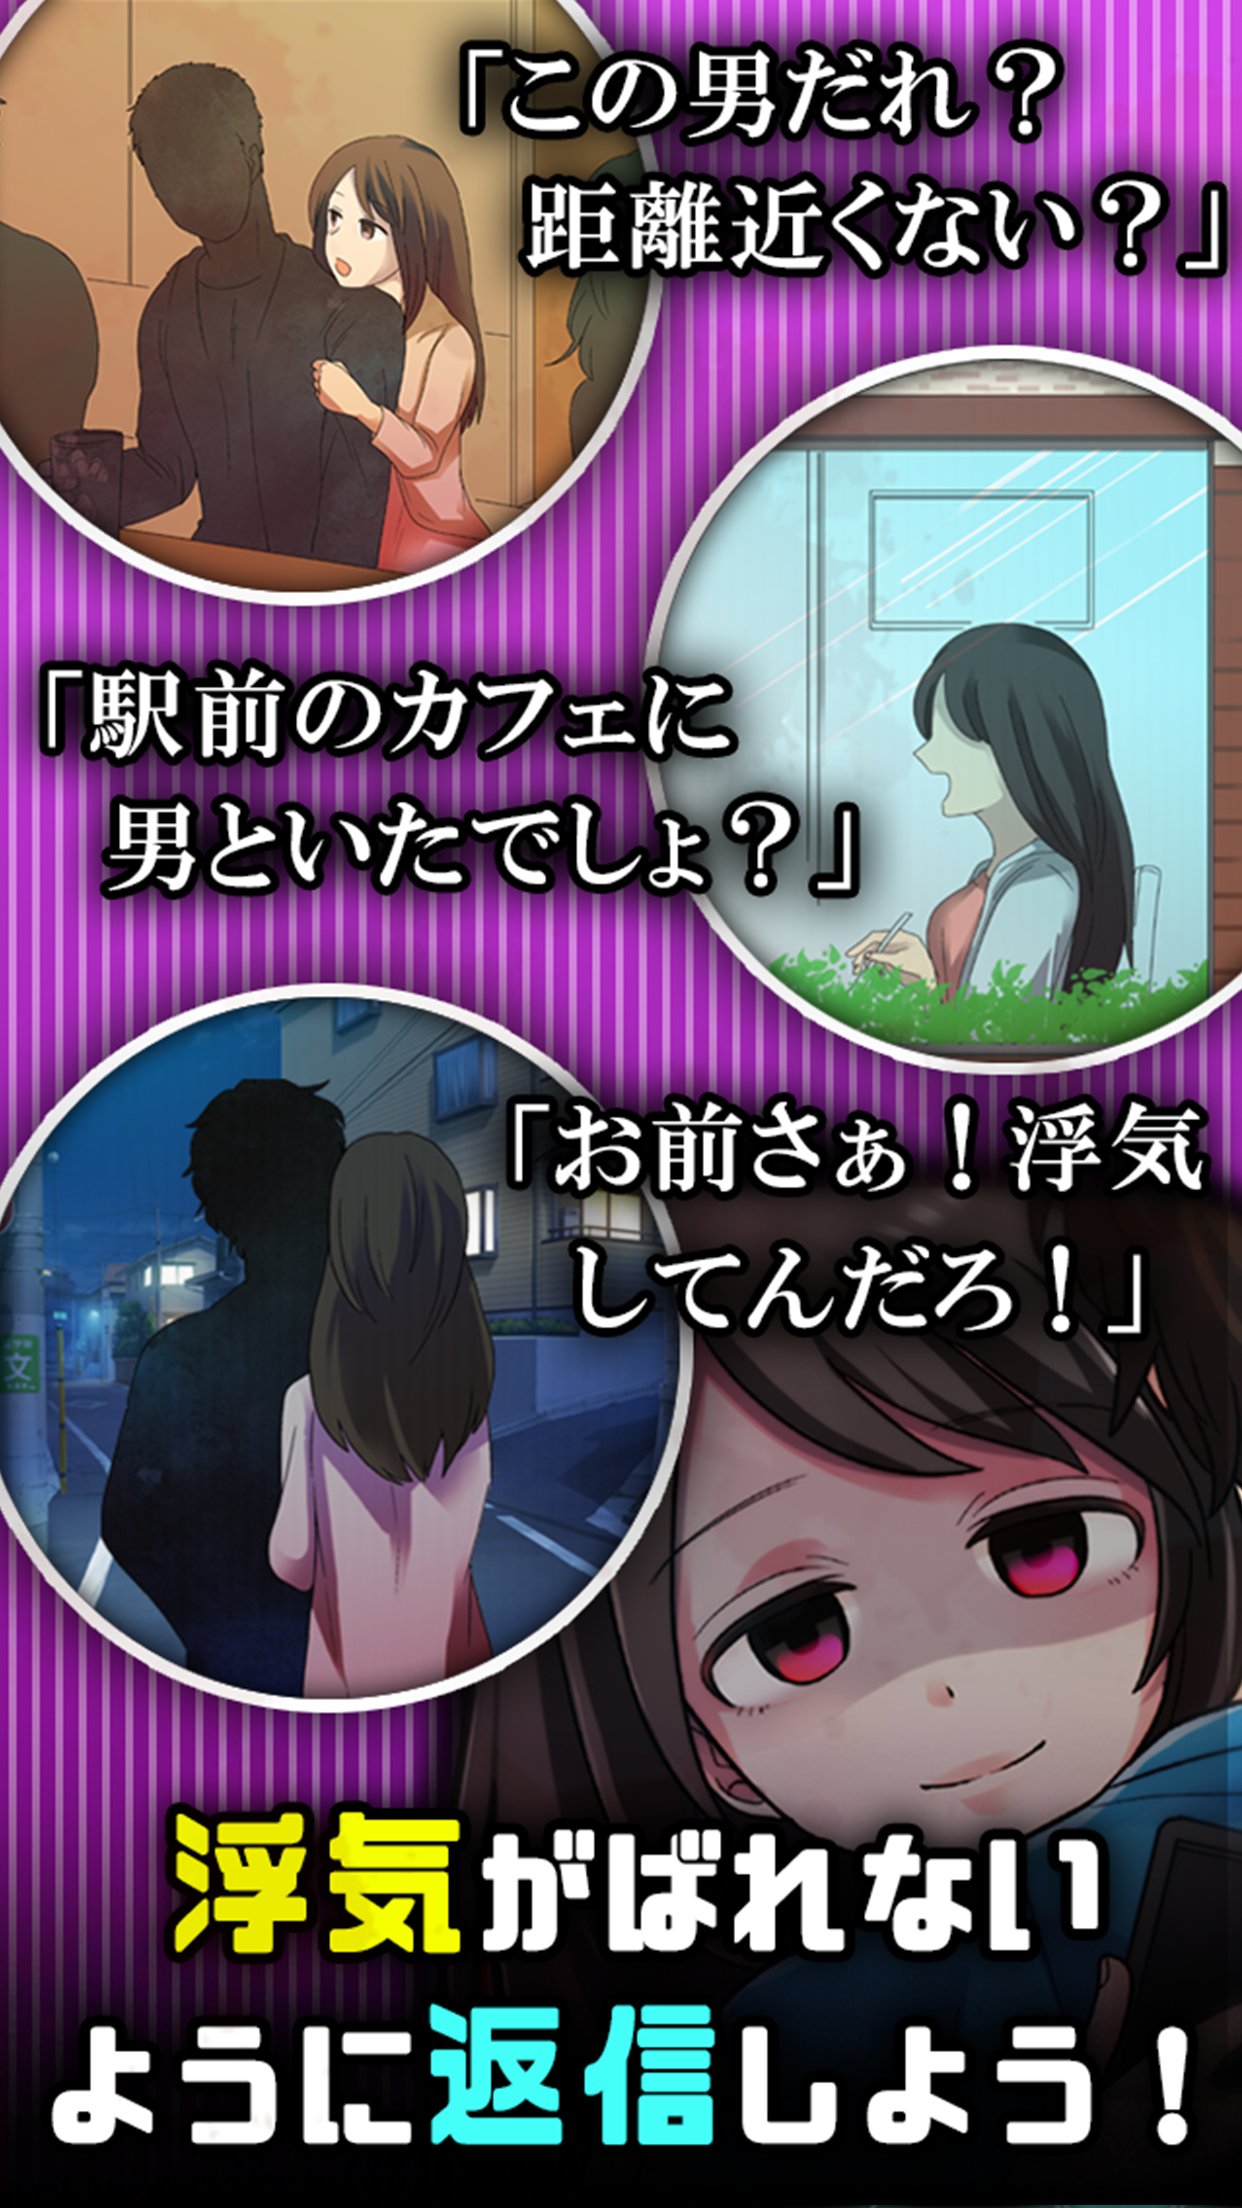 Screenshot of 浮気したら死んだ…恋愛謎解きチャットゲームでアナタもリア充？